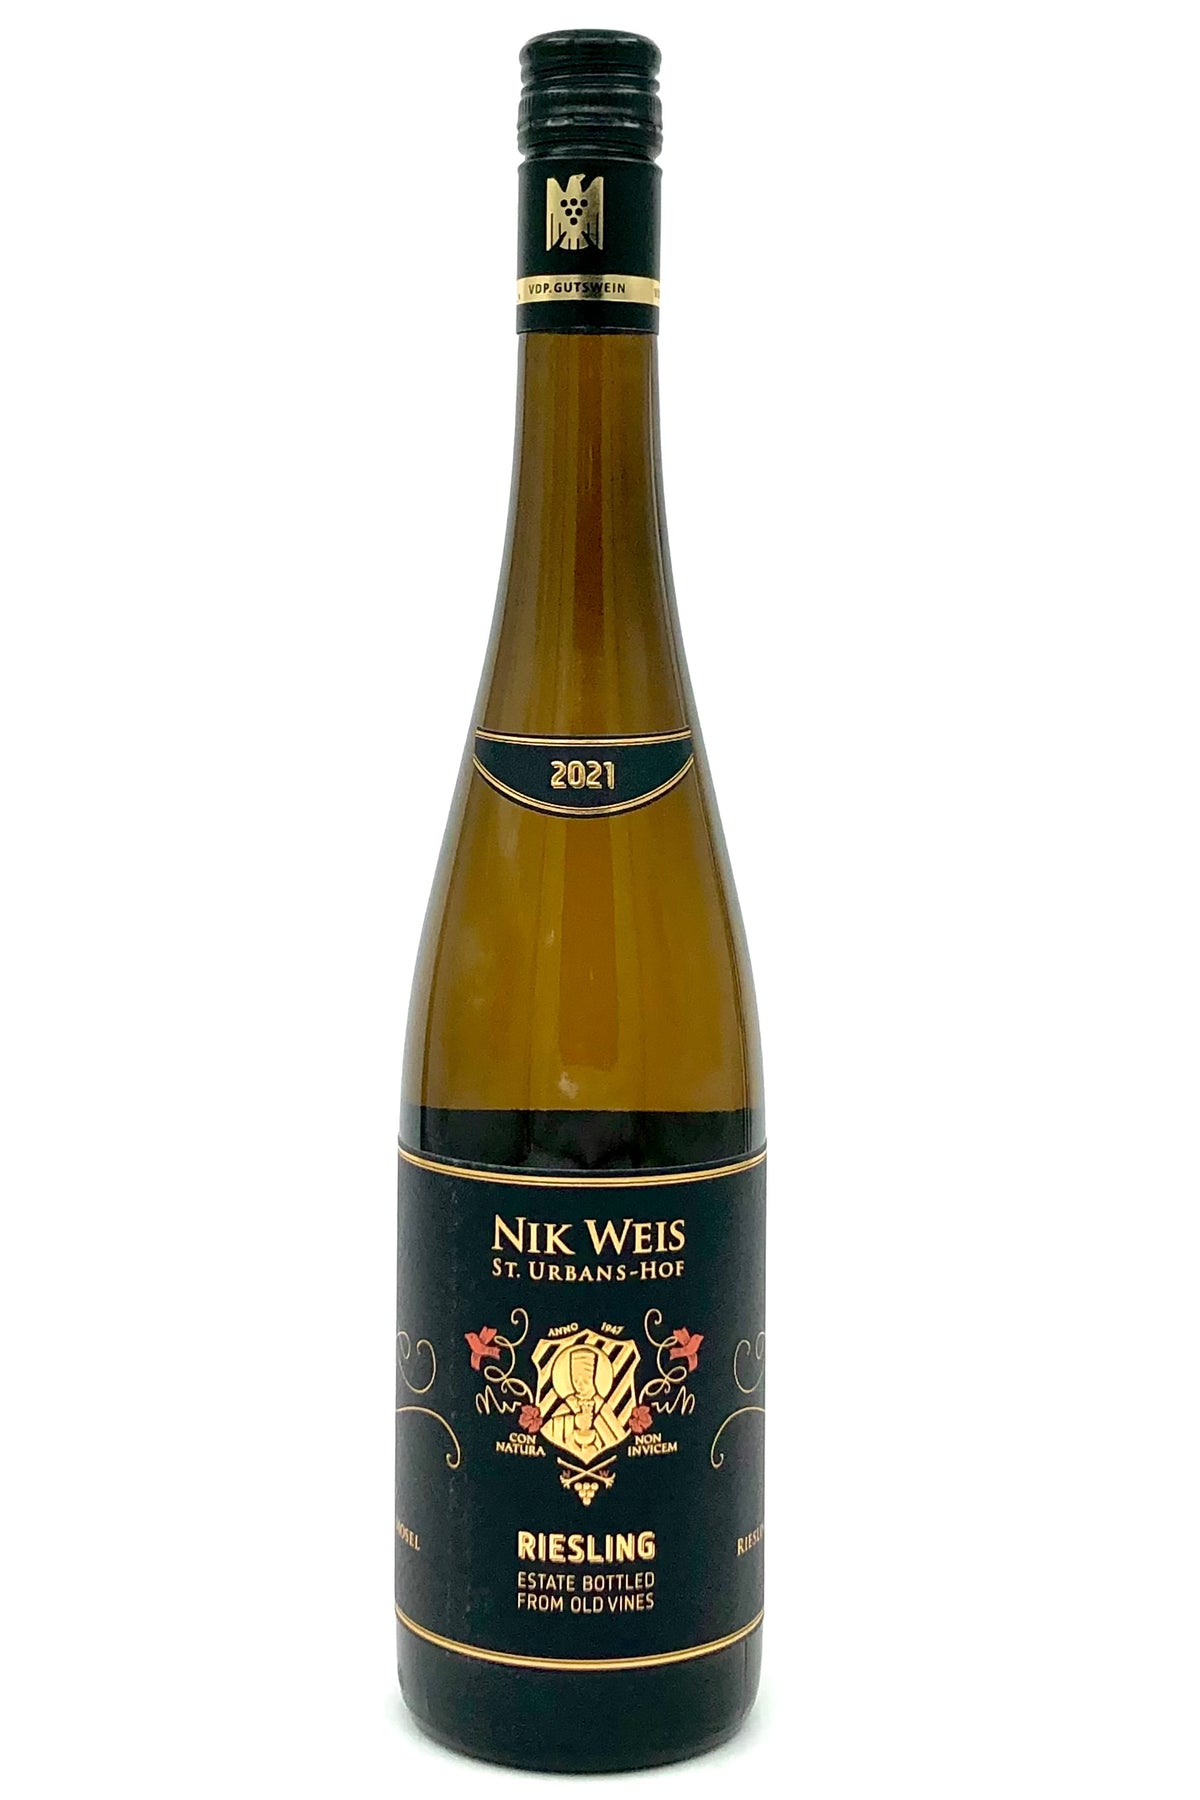 Nik Weis St.-Urbans-Hof 2021 Riesling Qualitätswein Mosel From Old Vines